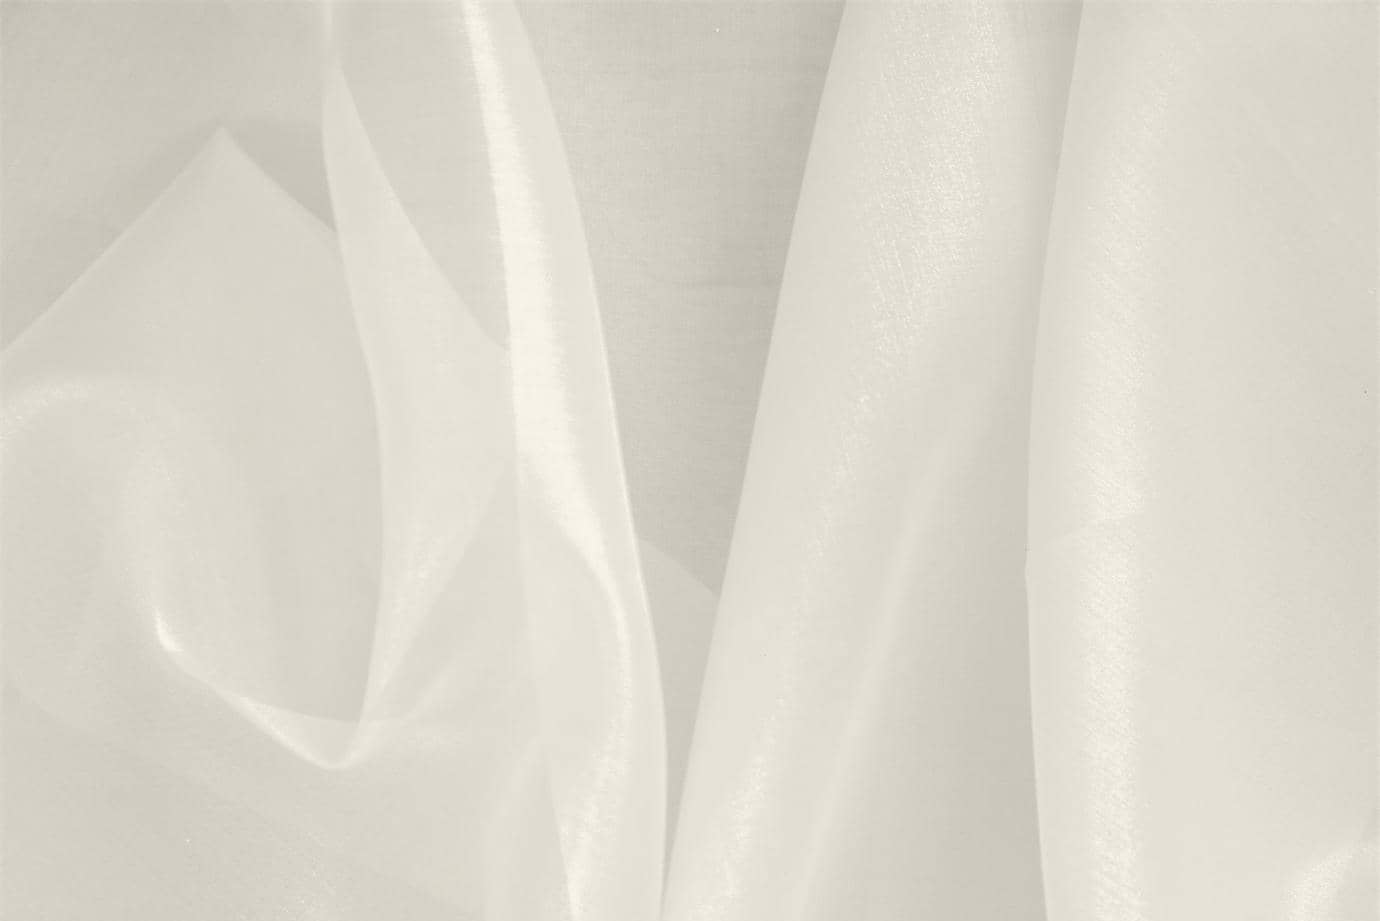 Tissu Organza Blanc lait en Soie pour vêtements